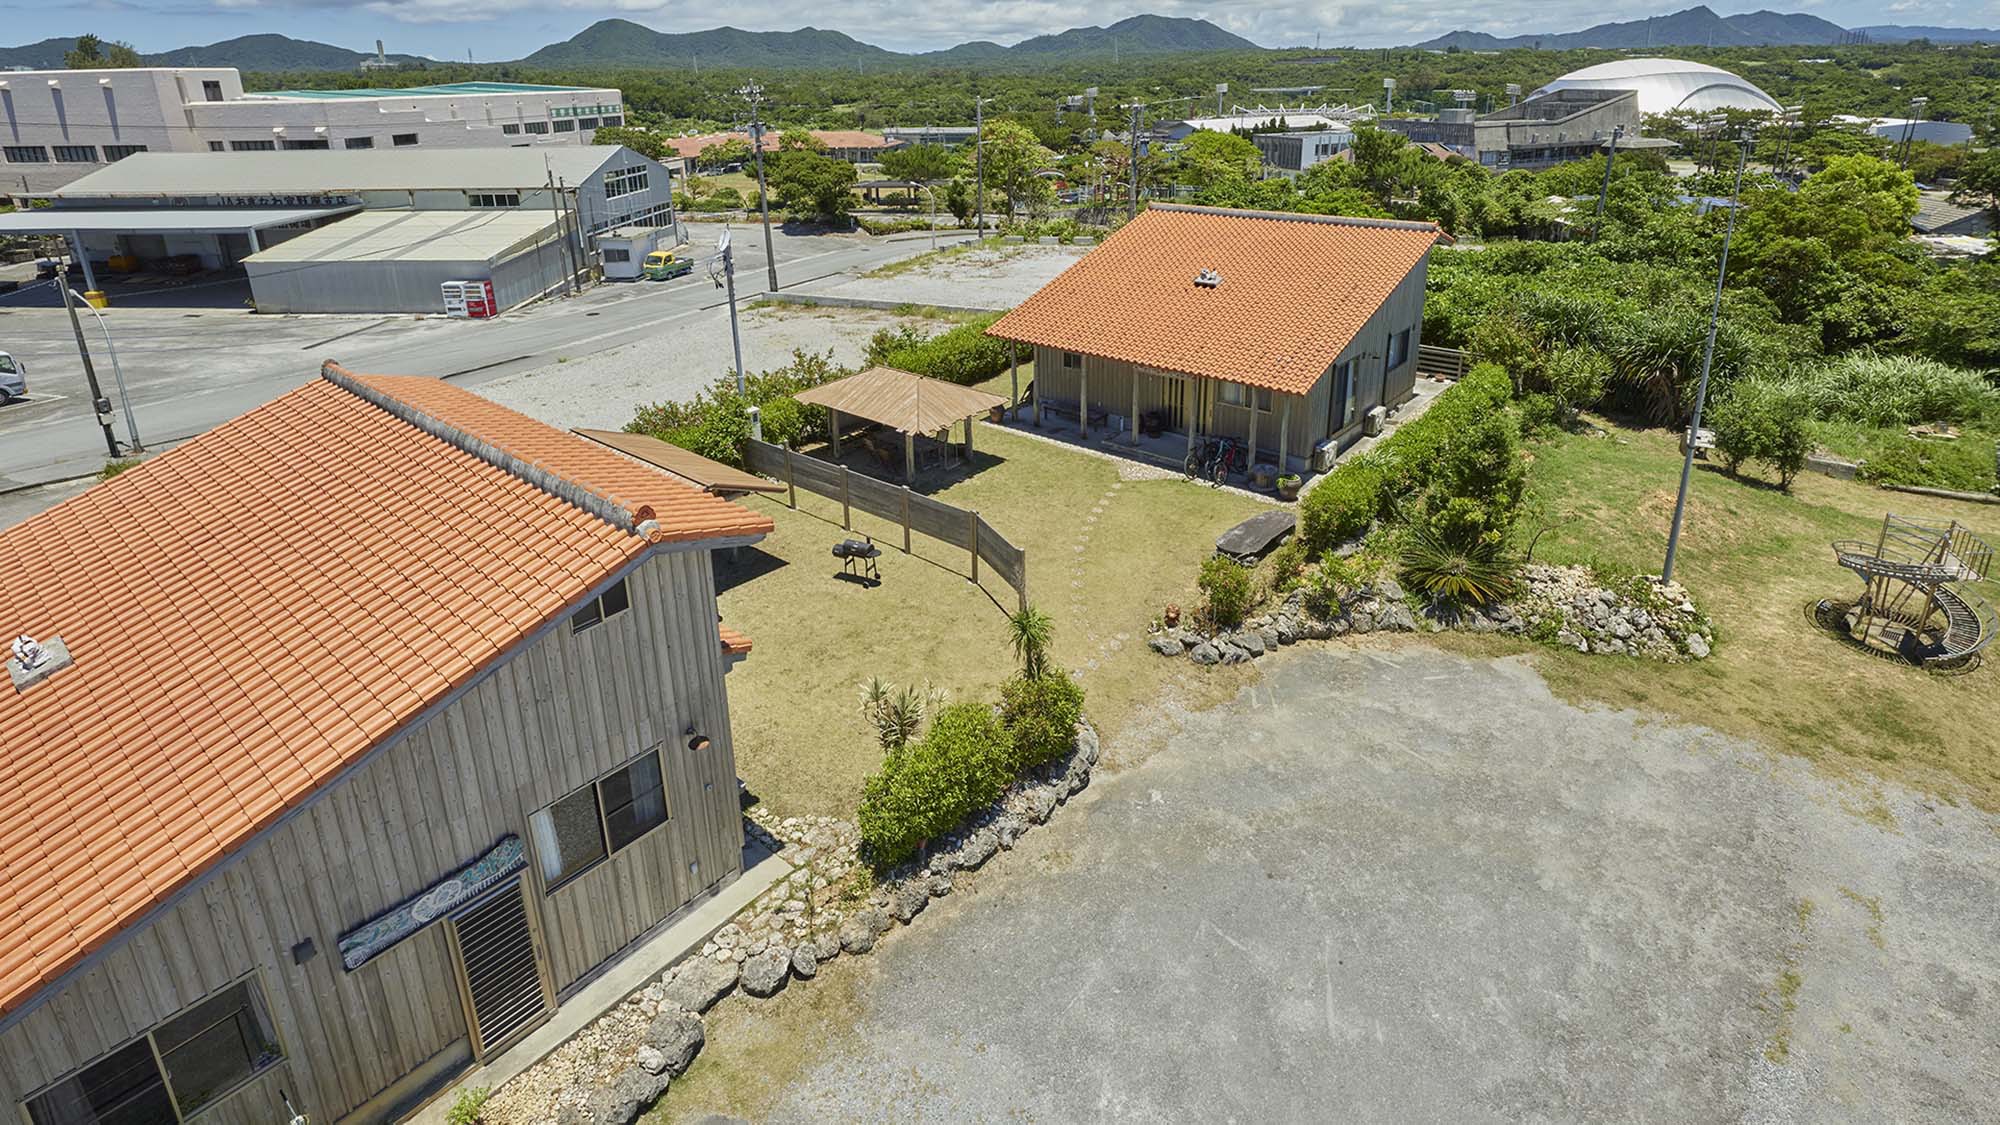 ・【外観】沖縄をテーマにした木造建築赤瓦の一棟貸しのペンションです